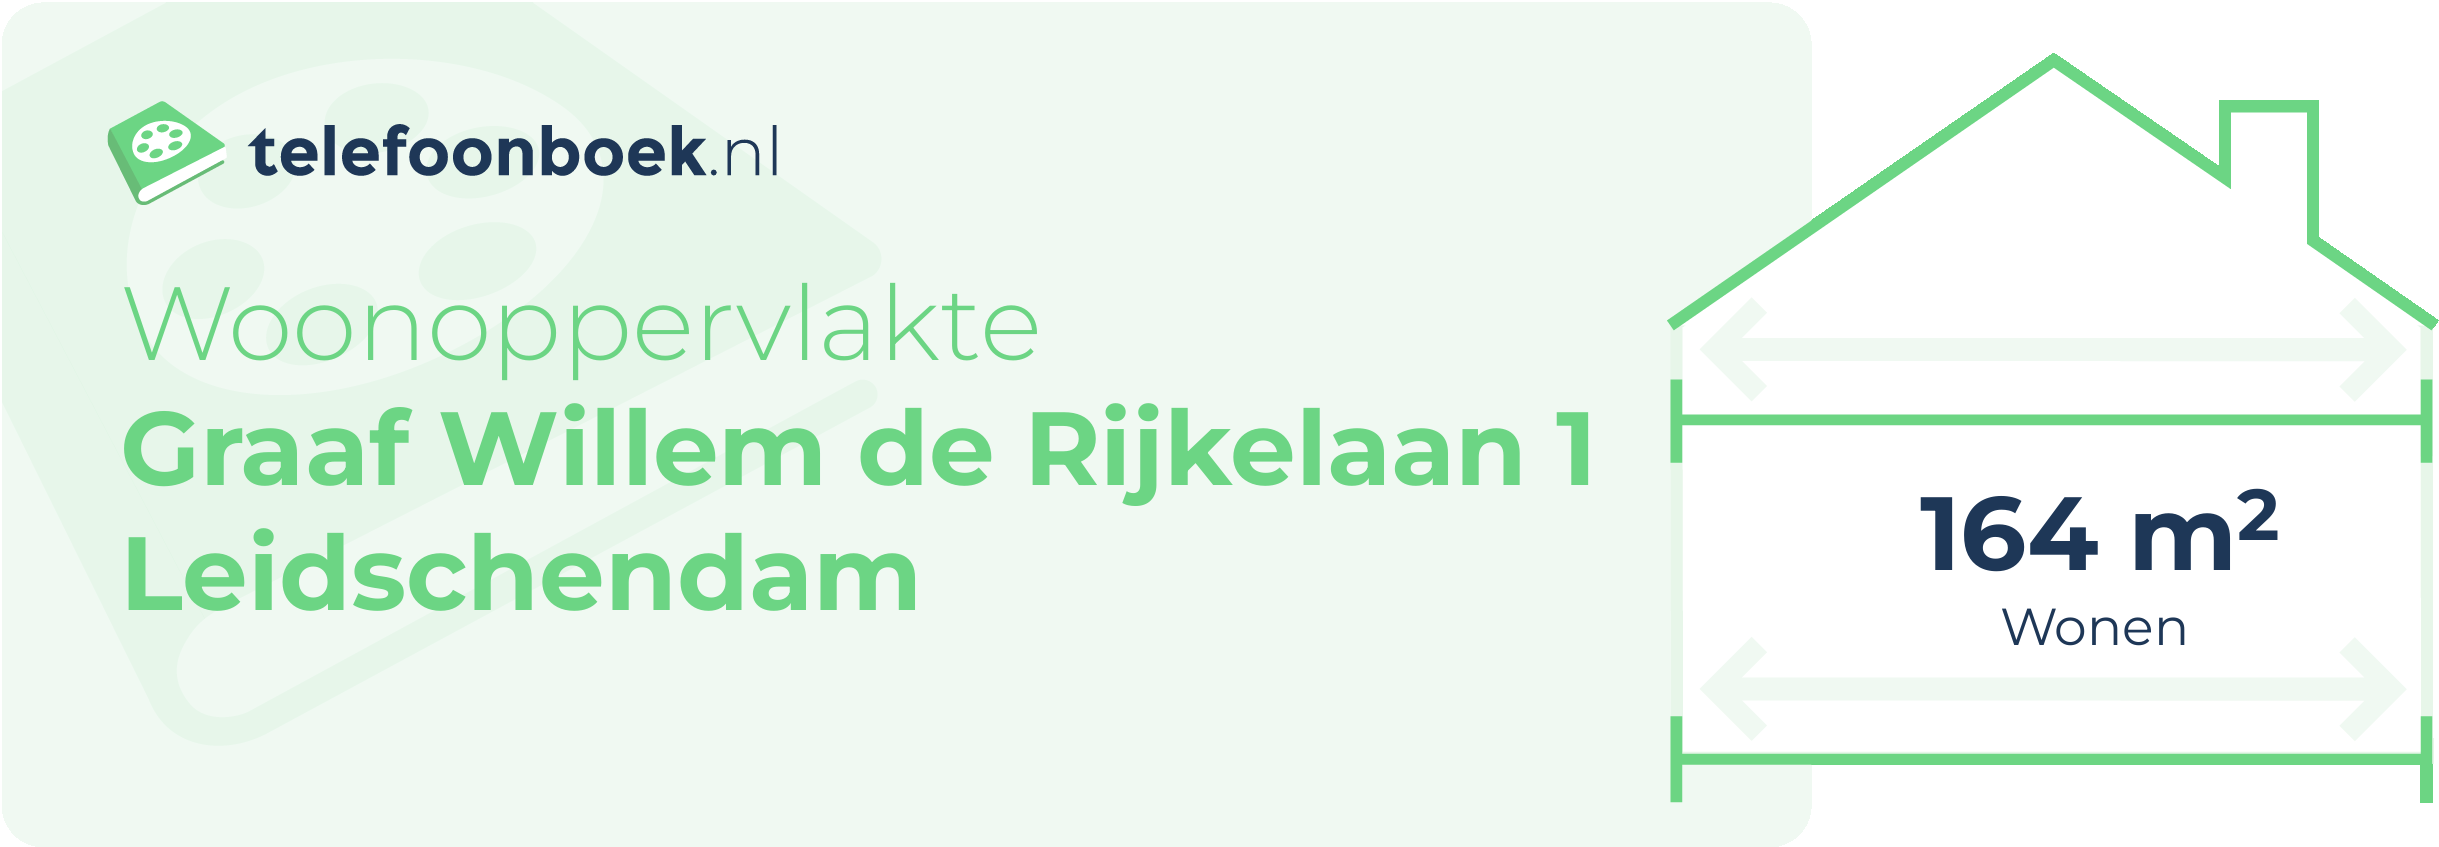 Woonoppervlakte Graaf Willem De Rijkelaan 1 Leidschendam